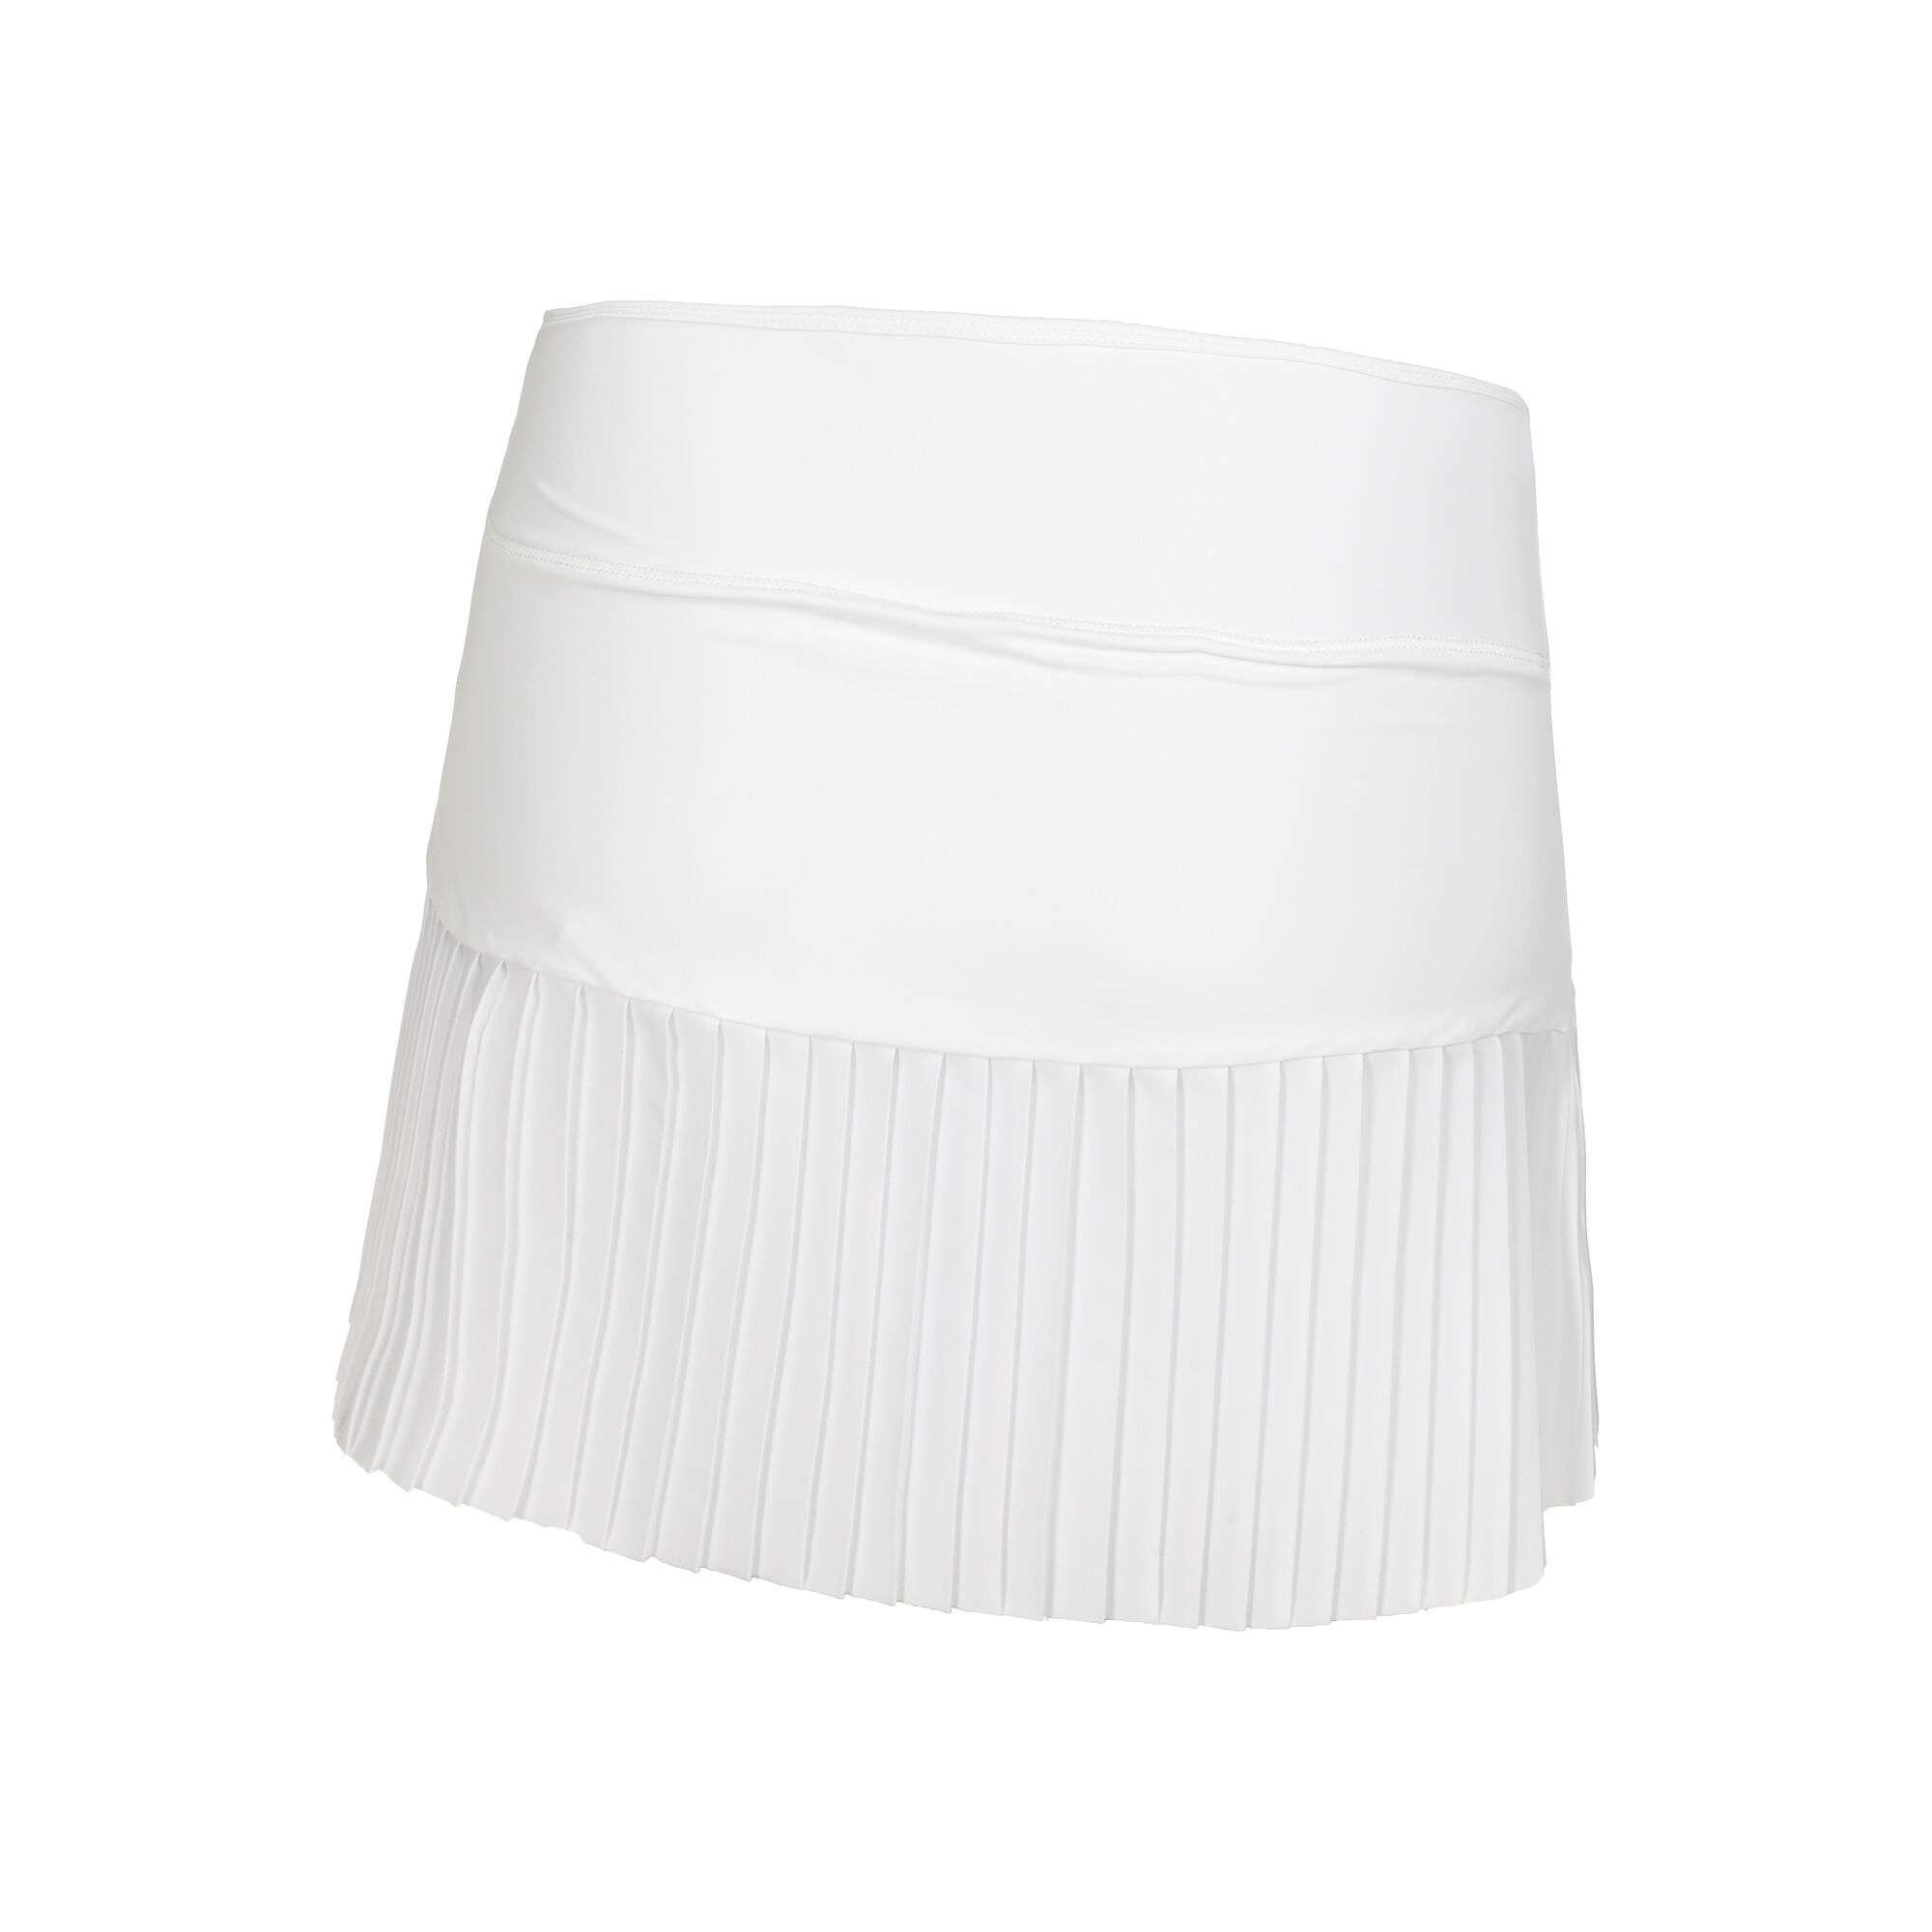 Buy Endless Ripley Skirt Women White online